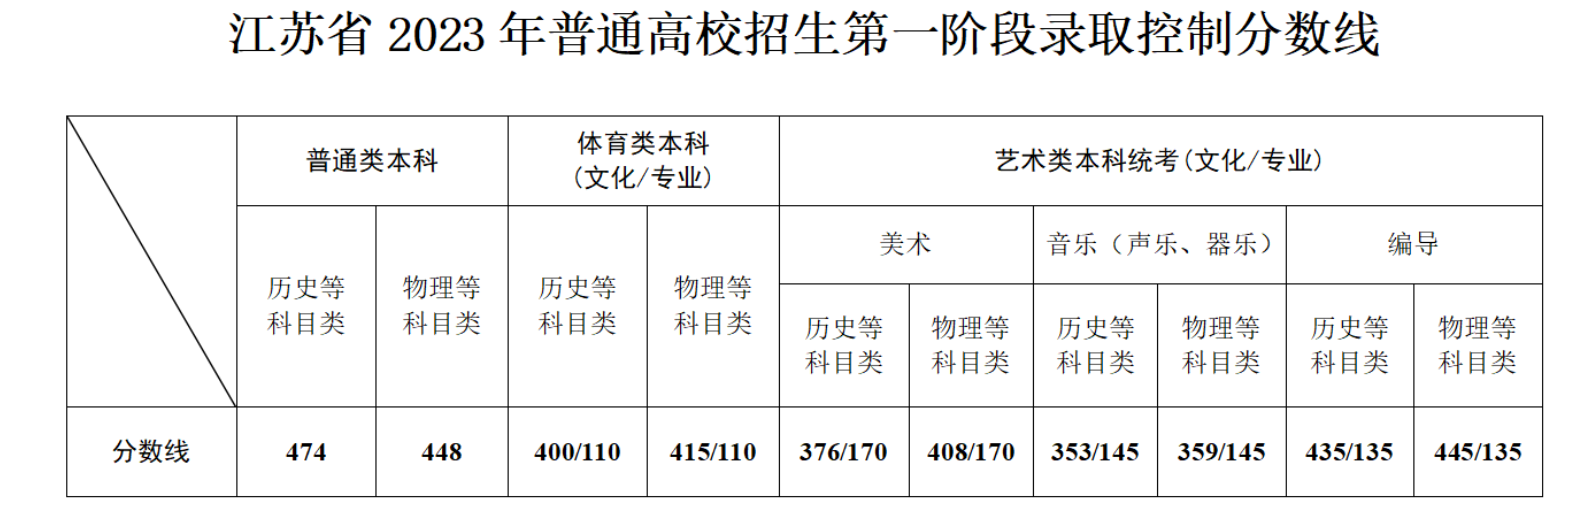 2023江苏高考分数线公布 各批次分数线汇总